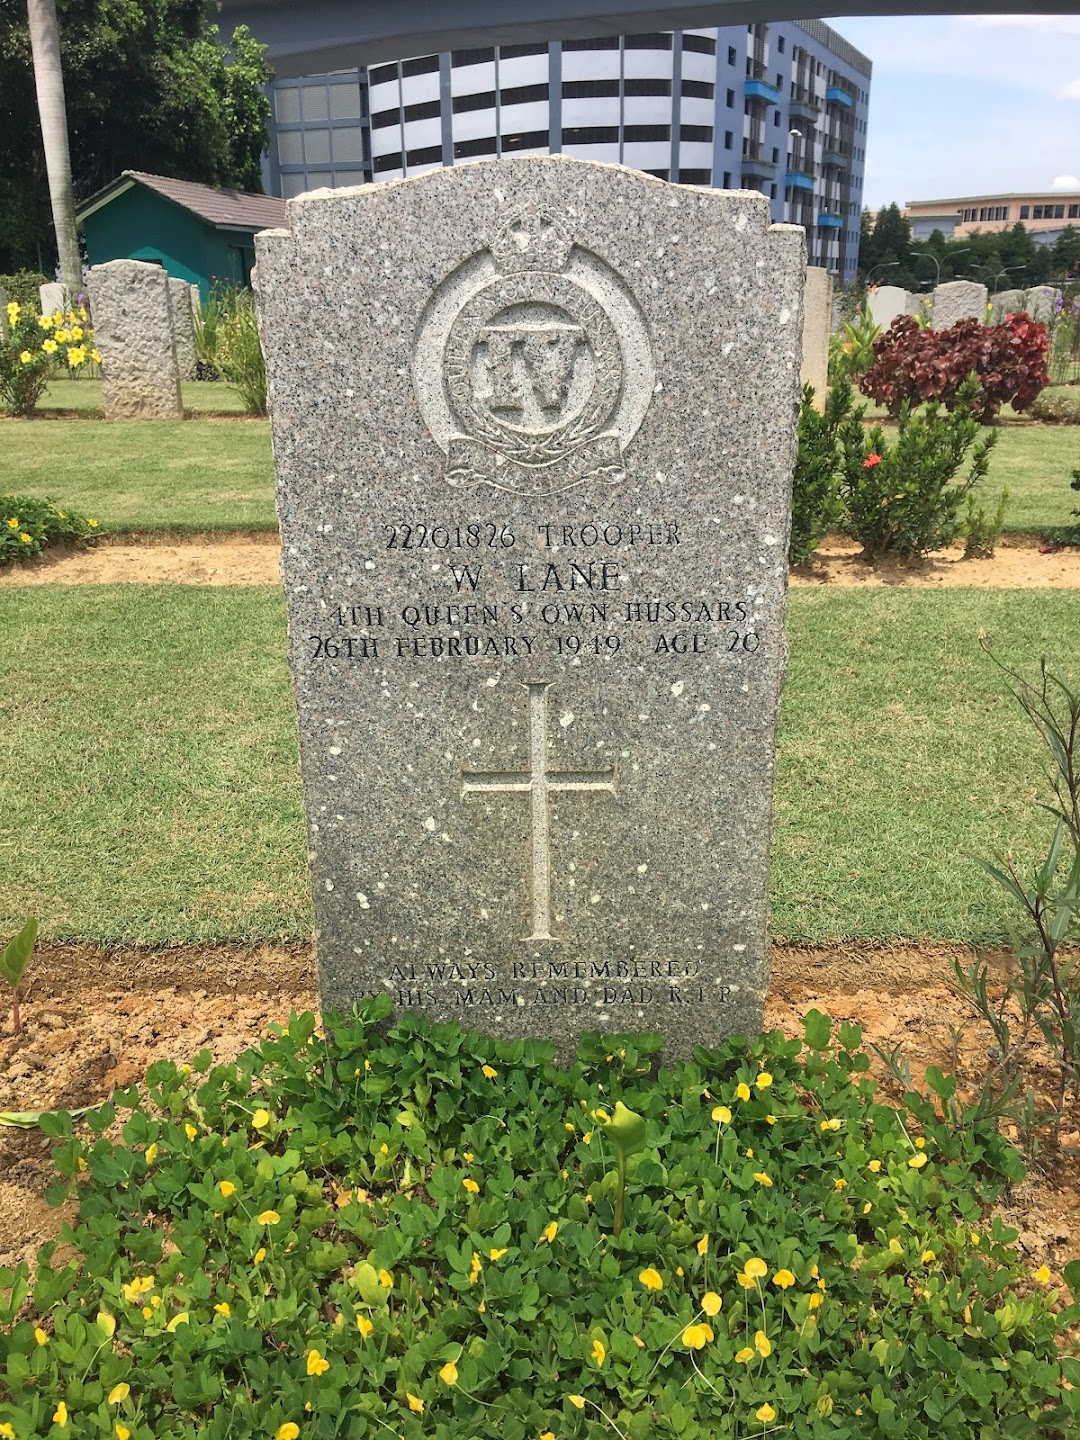 Cheras War Cemetery